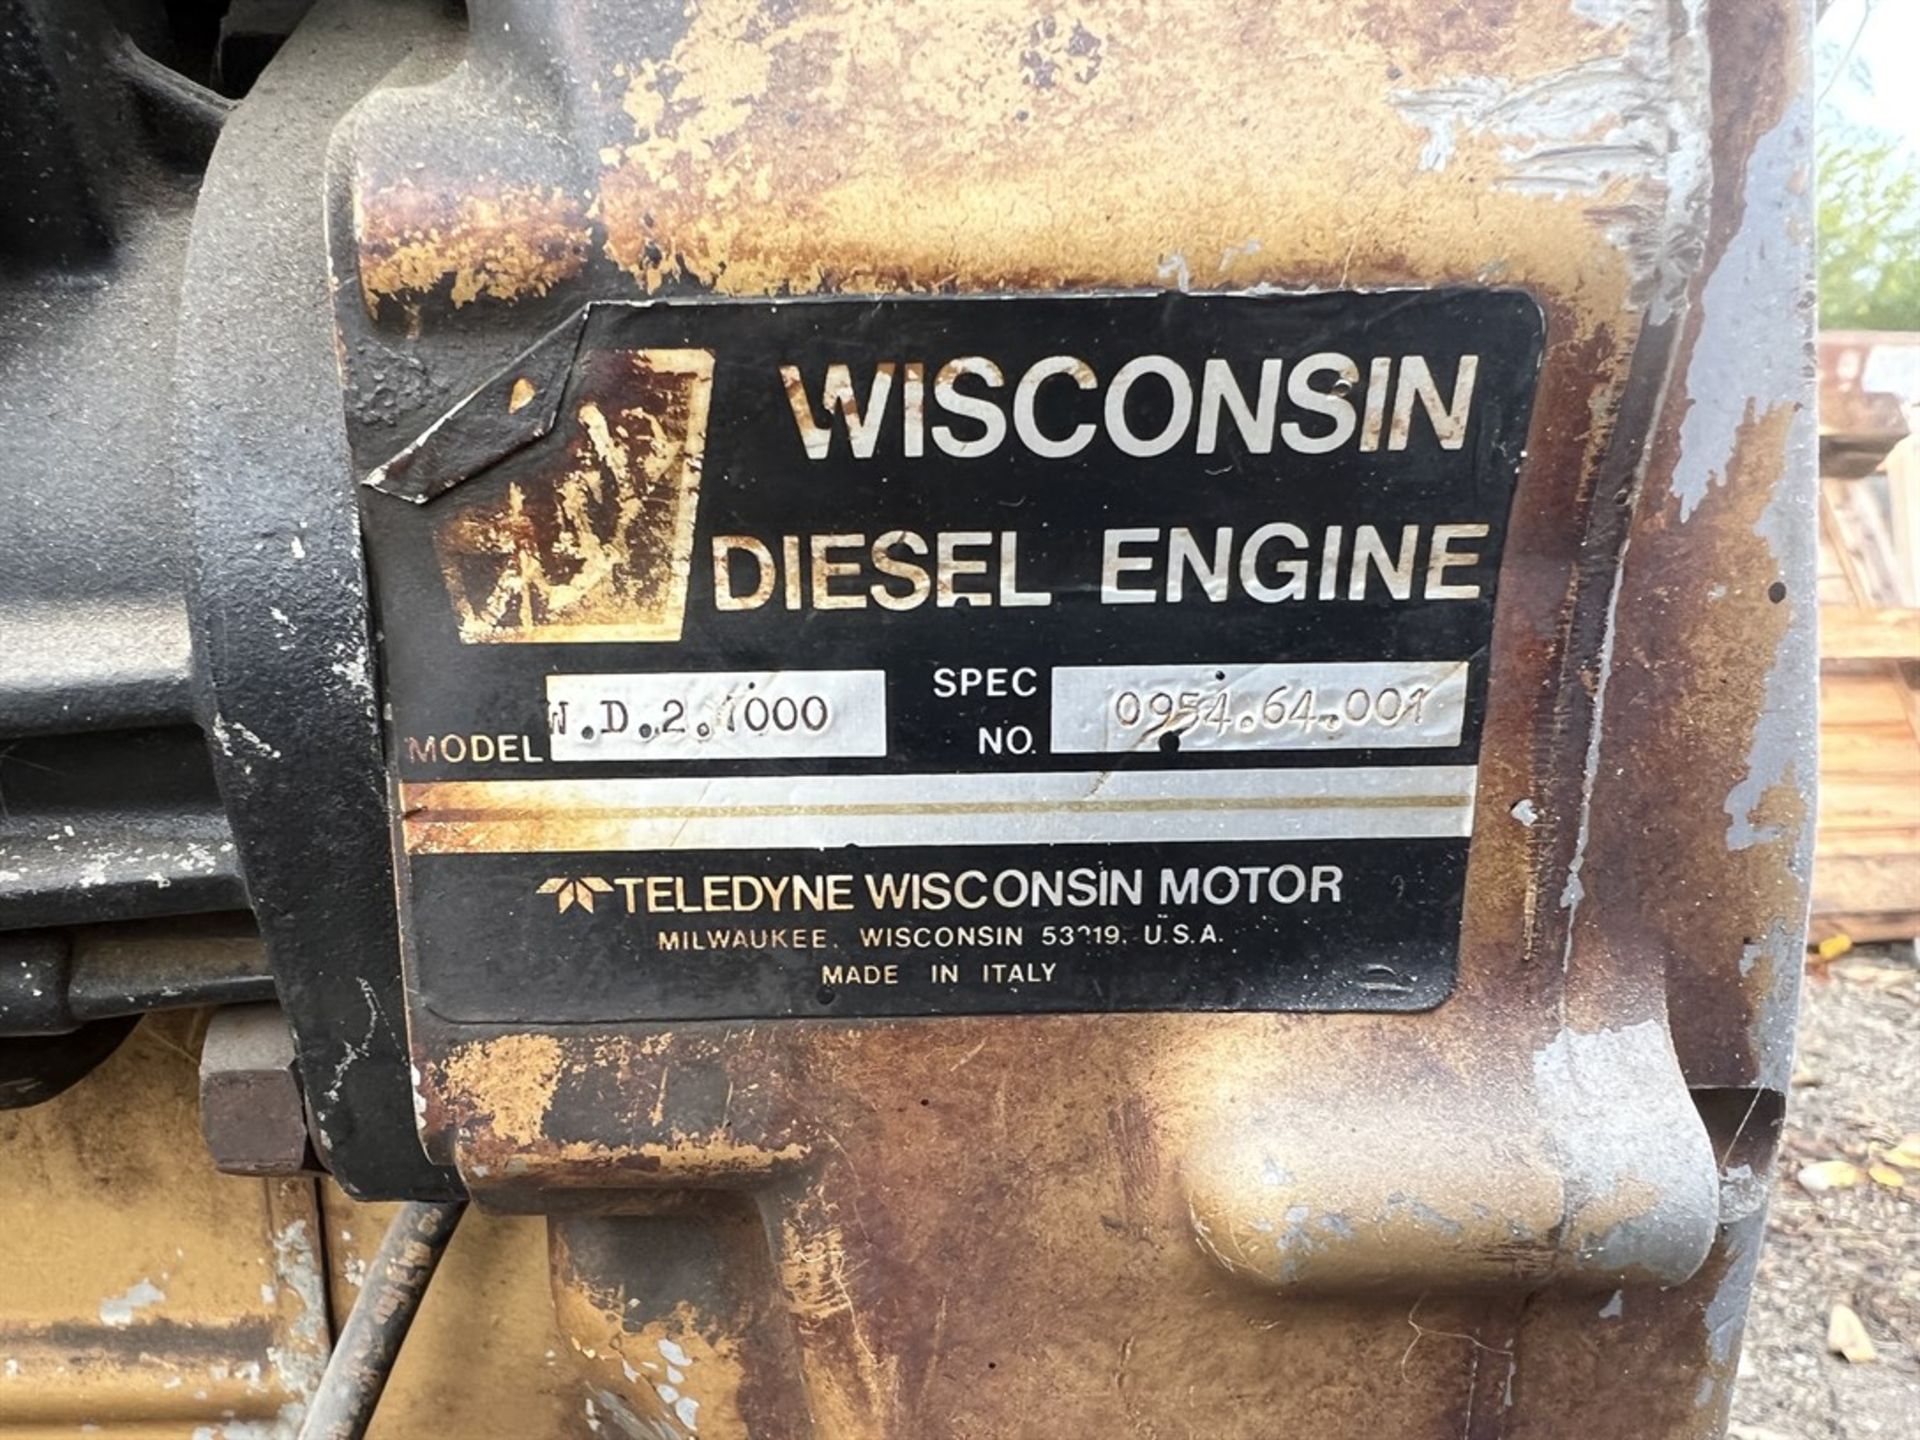 KURZ & ROOT E1535M773F Generator, s/n PU-286NH, 5 KW, 6.25 KVA, w/ Wisconsin Diesel Engine - Image 6 of 7